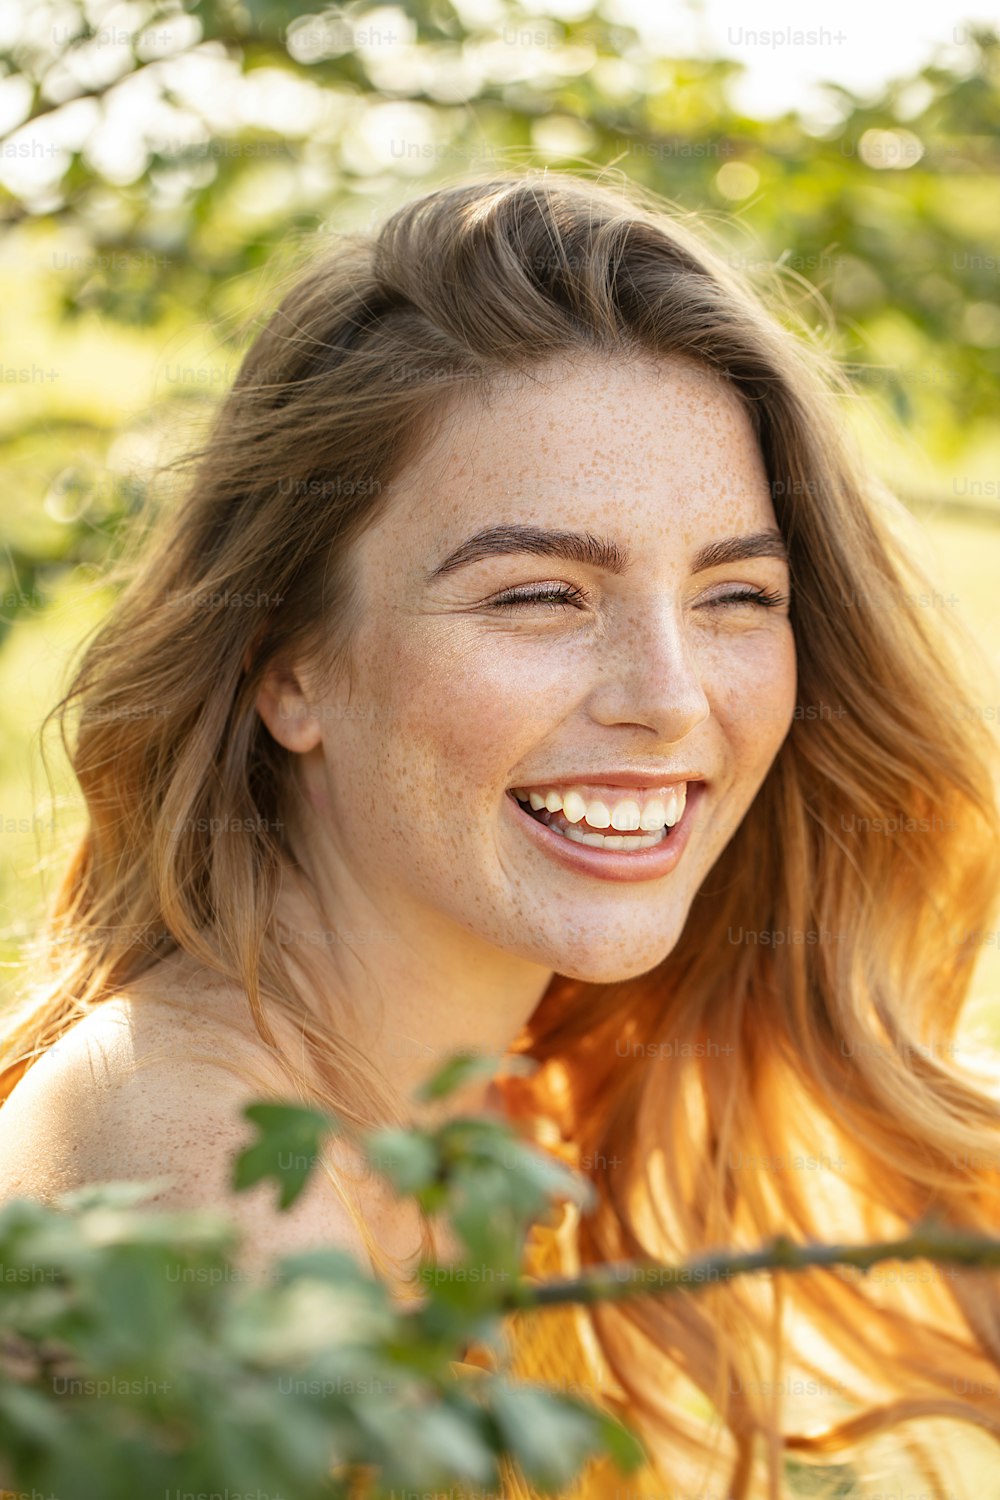 Mulher bonita feliz com sardas sorrindo, posando no jardim florido em dia ensolarado.